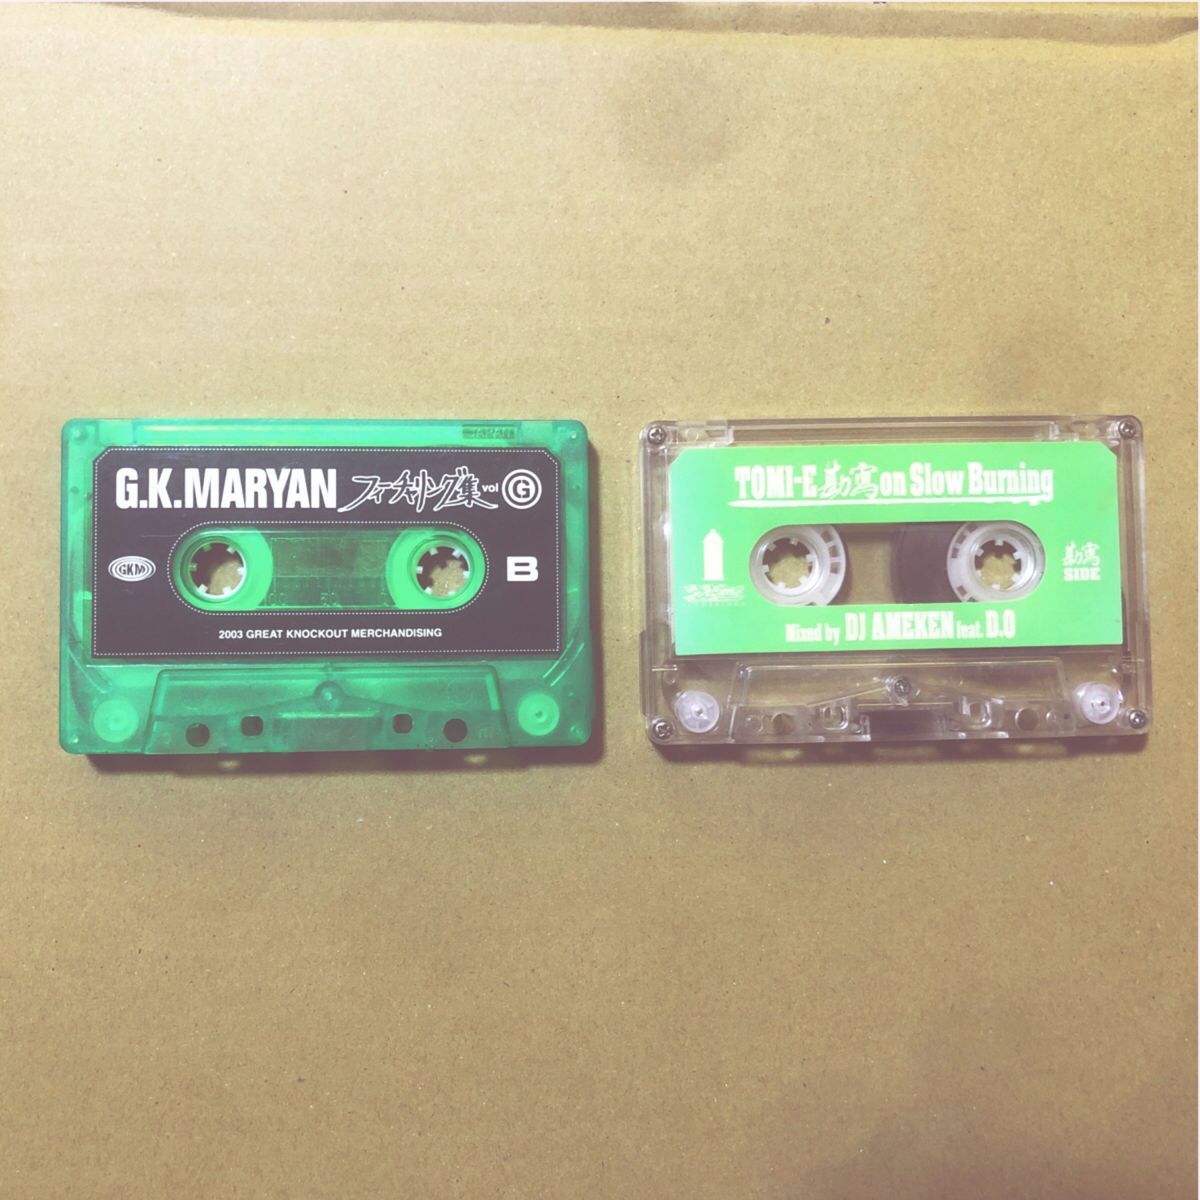 レアなミックスカセットテープの2本セット　G.K.MARYAN  →2003年発売　DJ AMEKEN  feat. D.O  